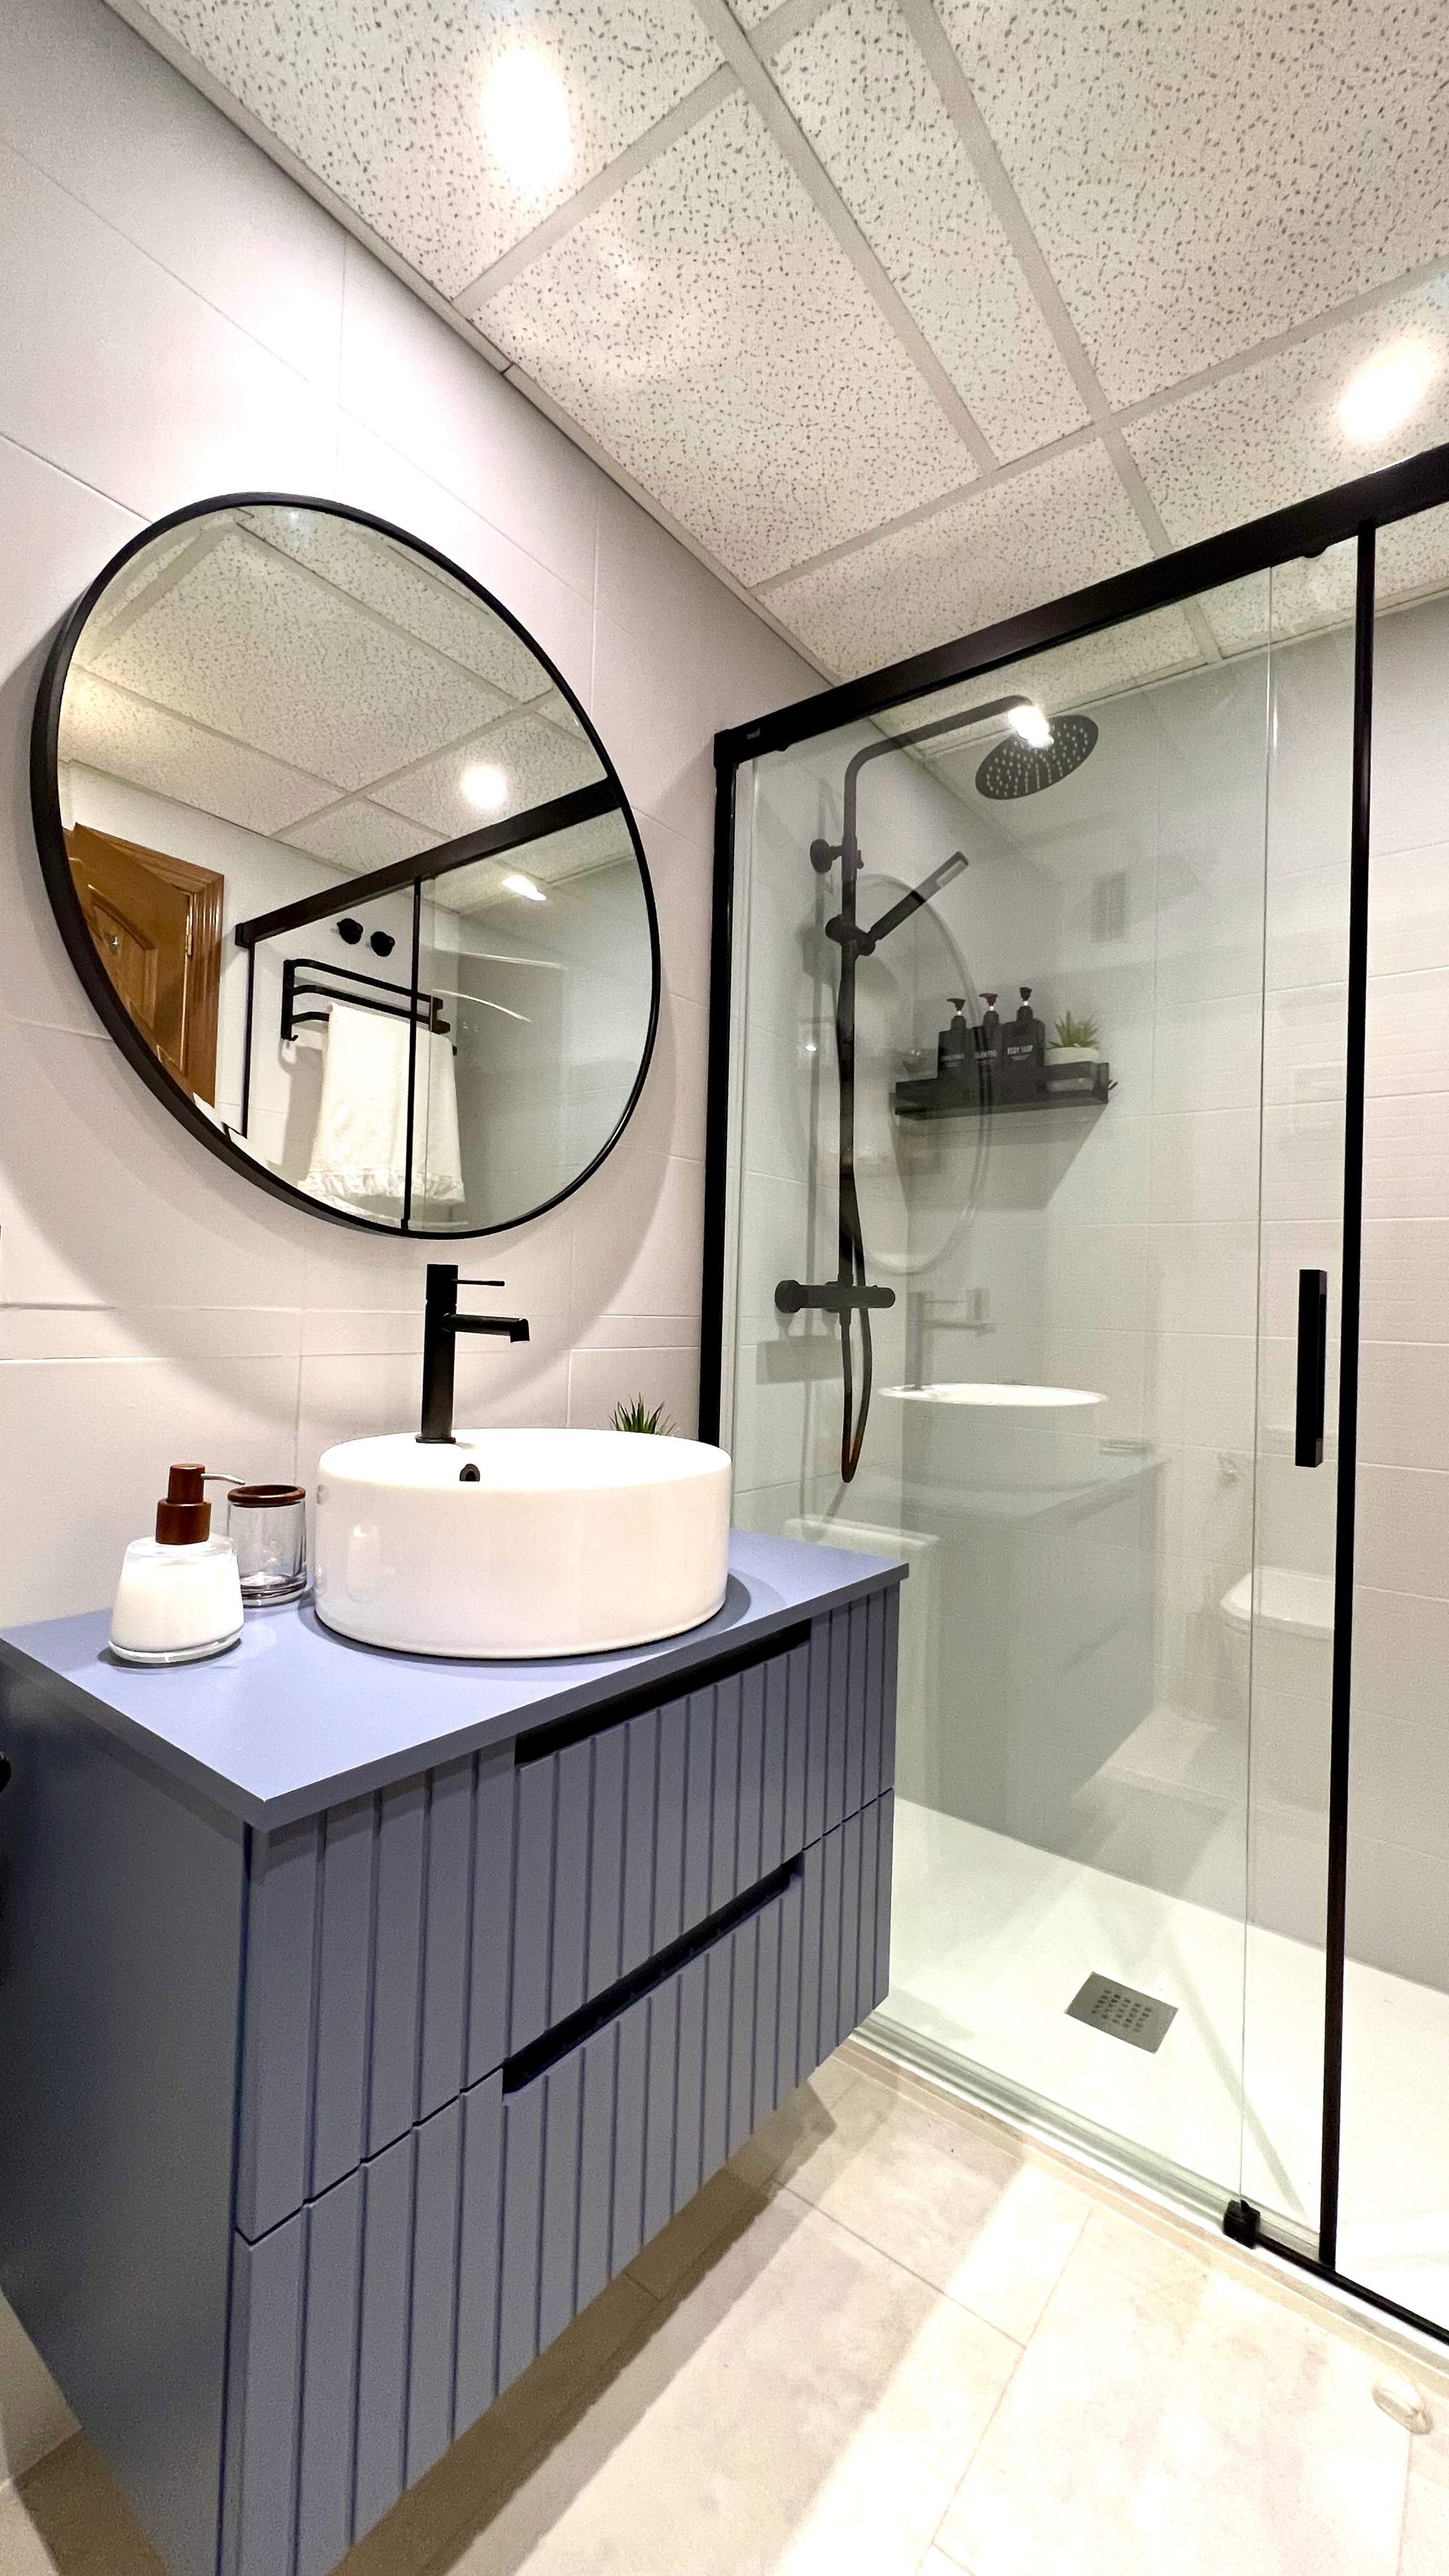 Baño con espejo redondo, mueble bajolavabo azul de madera y ducha con mampara.